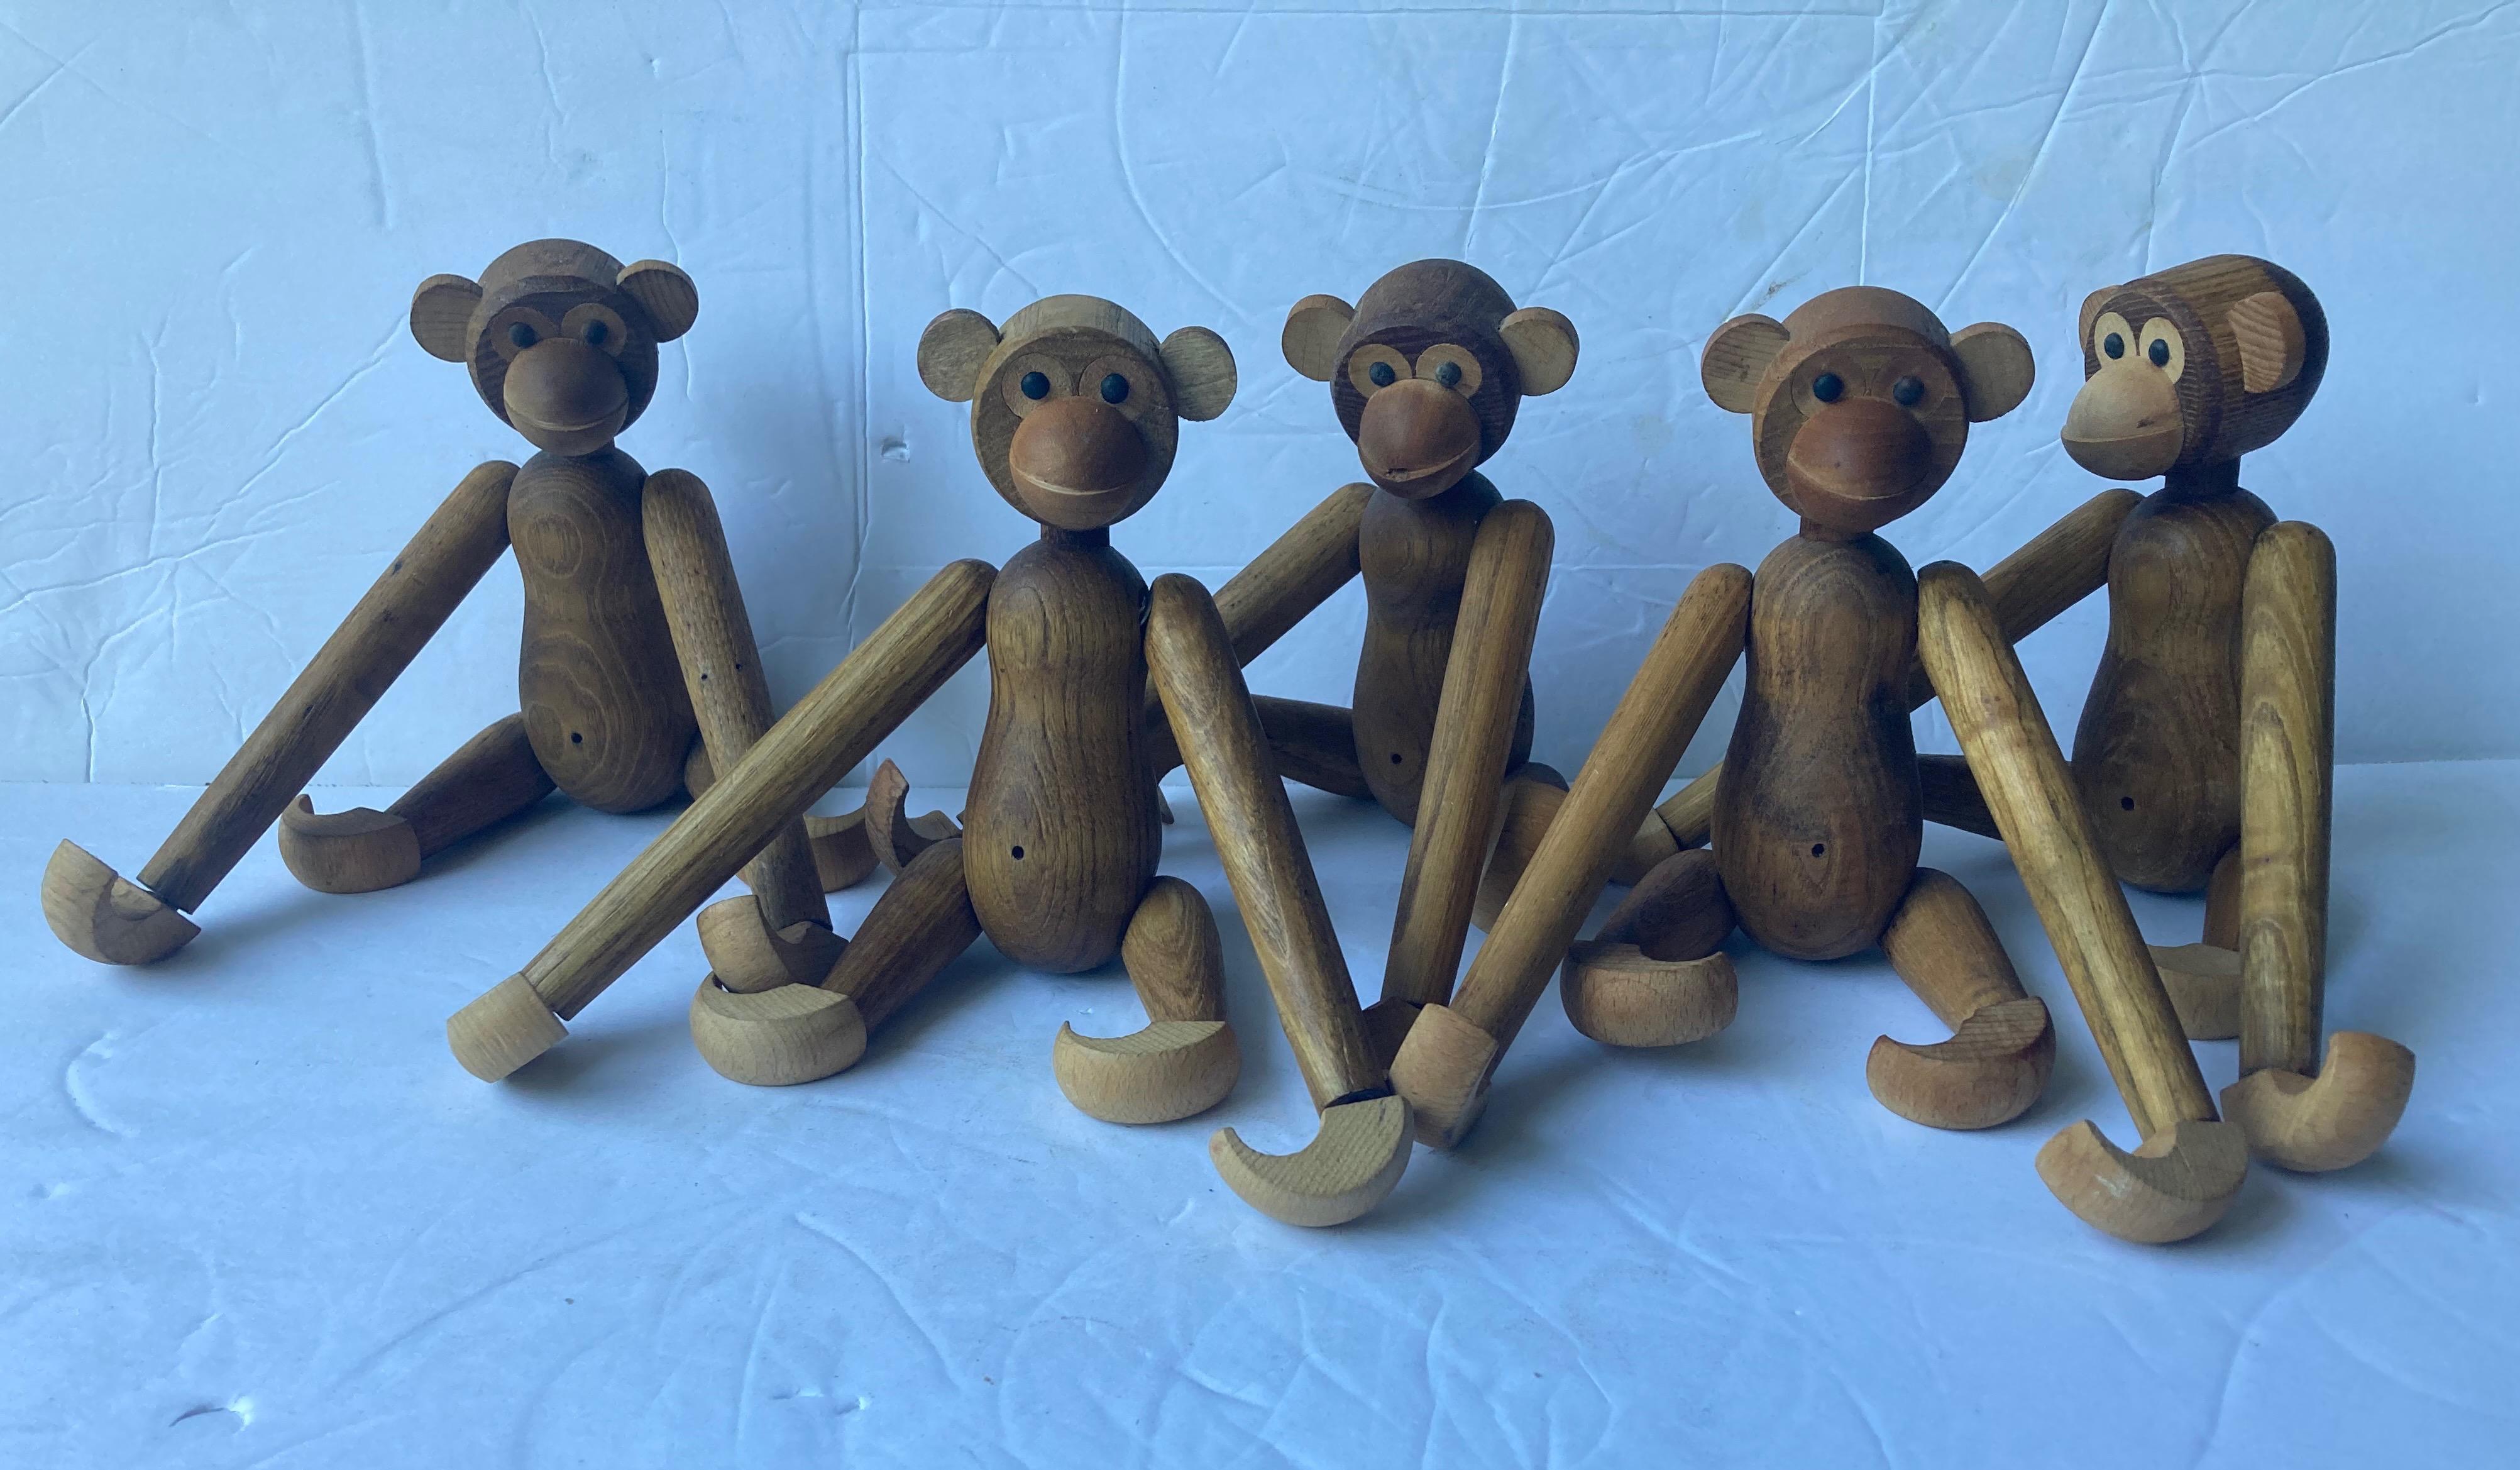 So niedlich kleine Sammlung von Spielzeug/Skulpturen von Affen in Holz. Diese Stücke wurden in Japan im Stil von Kay Bojesen hergestellt.